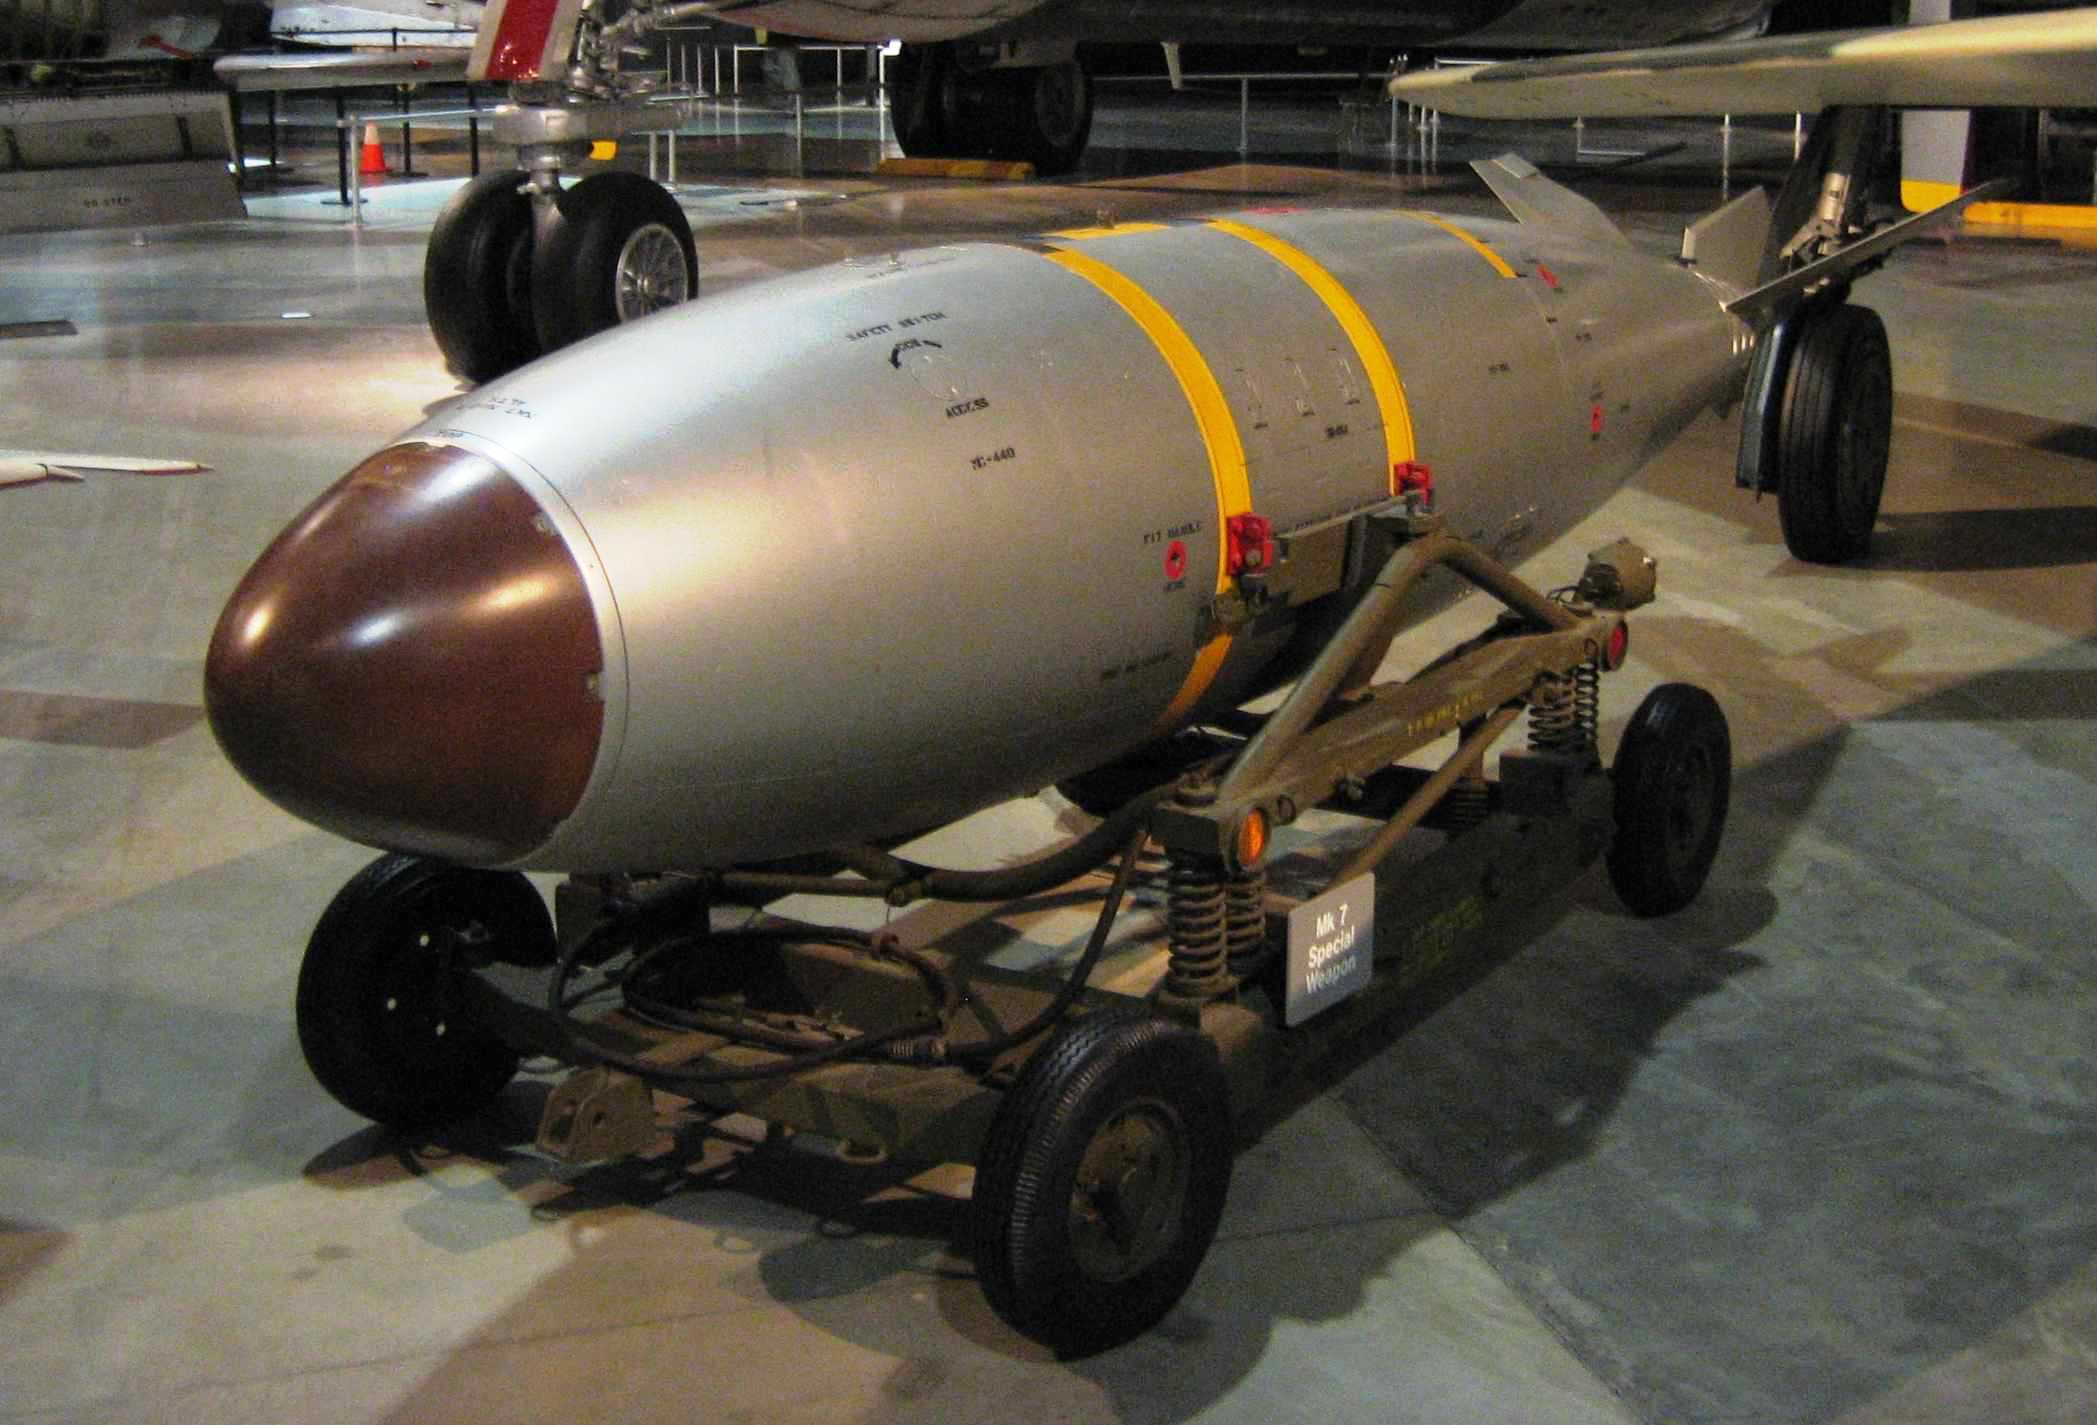 الانسحاب الأميركي المحتمل من المعاهدة النووية ينذر باطلاق سباق للتسلح النووي